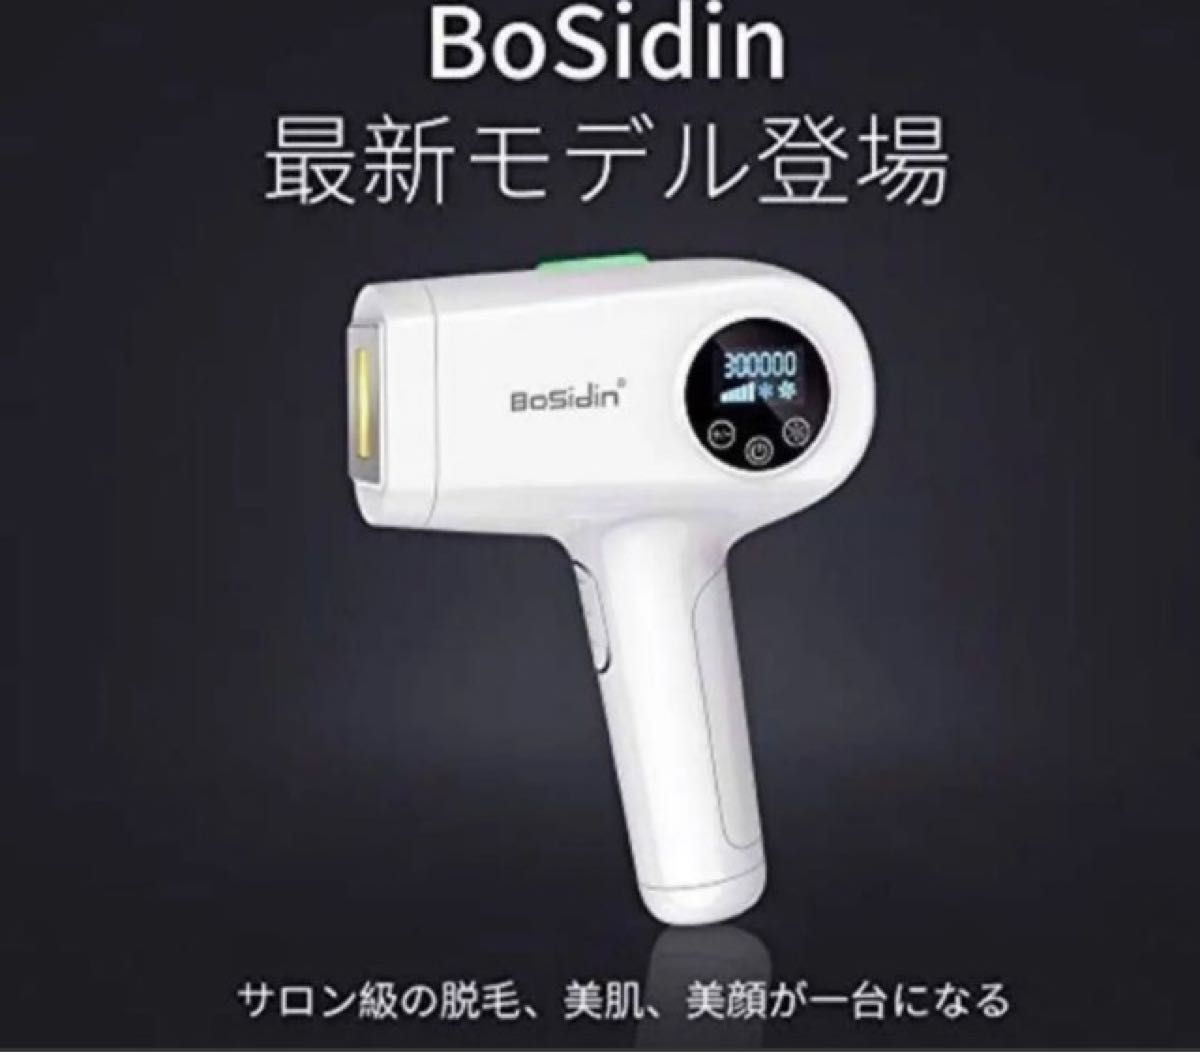 BoSidin 【新品・未使用品】 光脱毛器 全身用 30万発以上 男女兼用 脱毛器 脱毛